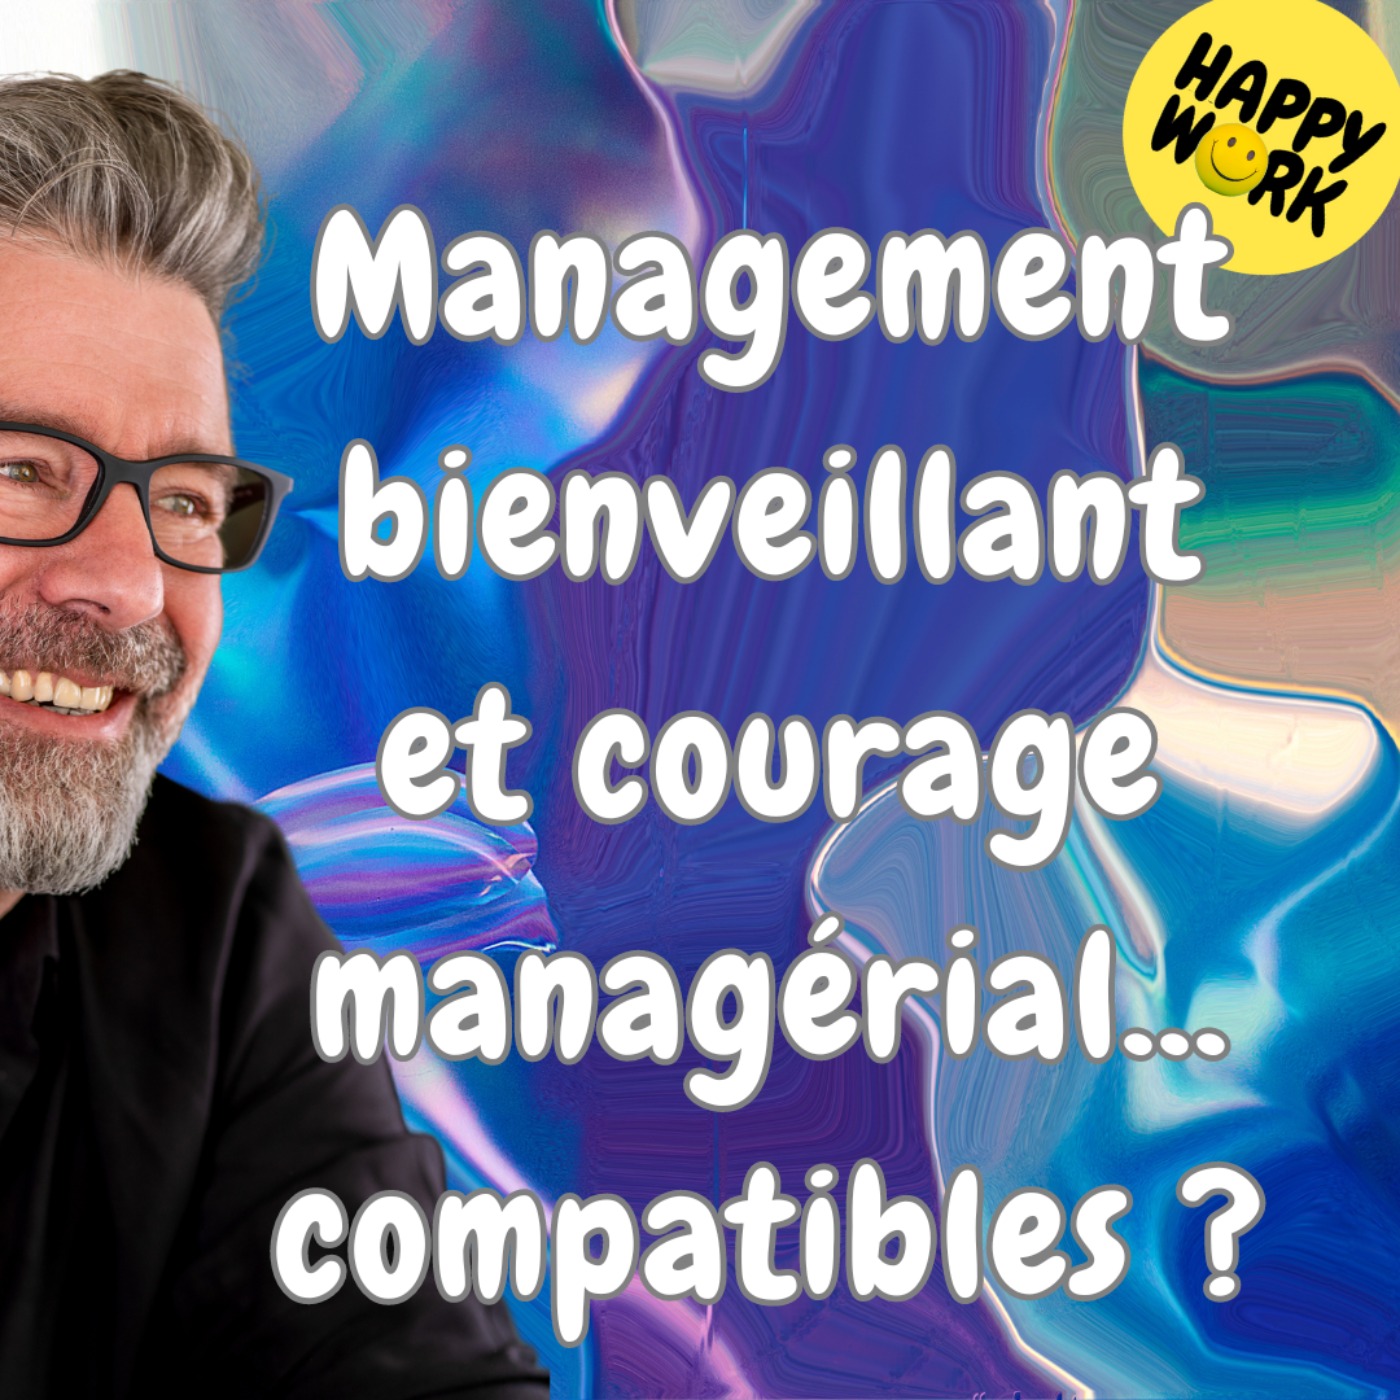 #1504 -Management bienveillant et courage managérial... compatibles ?